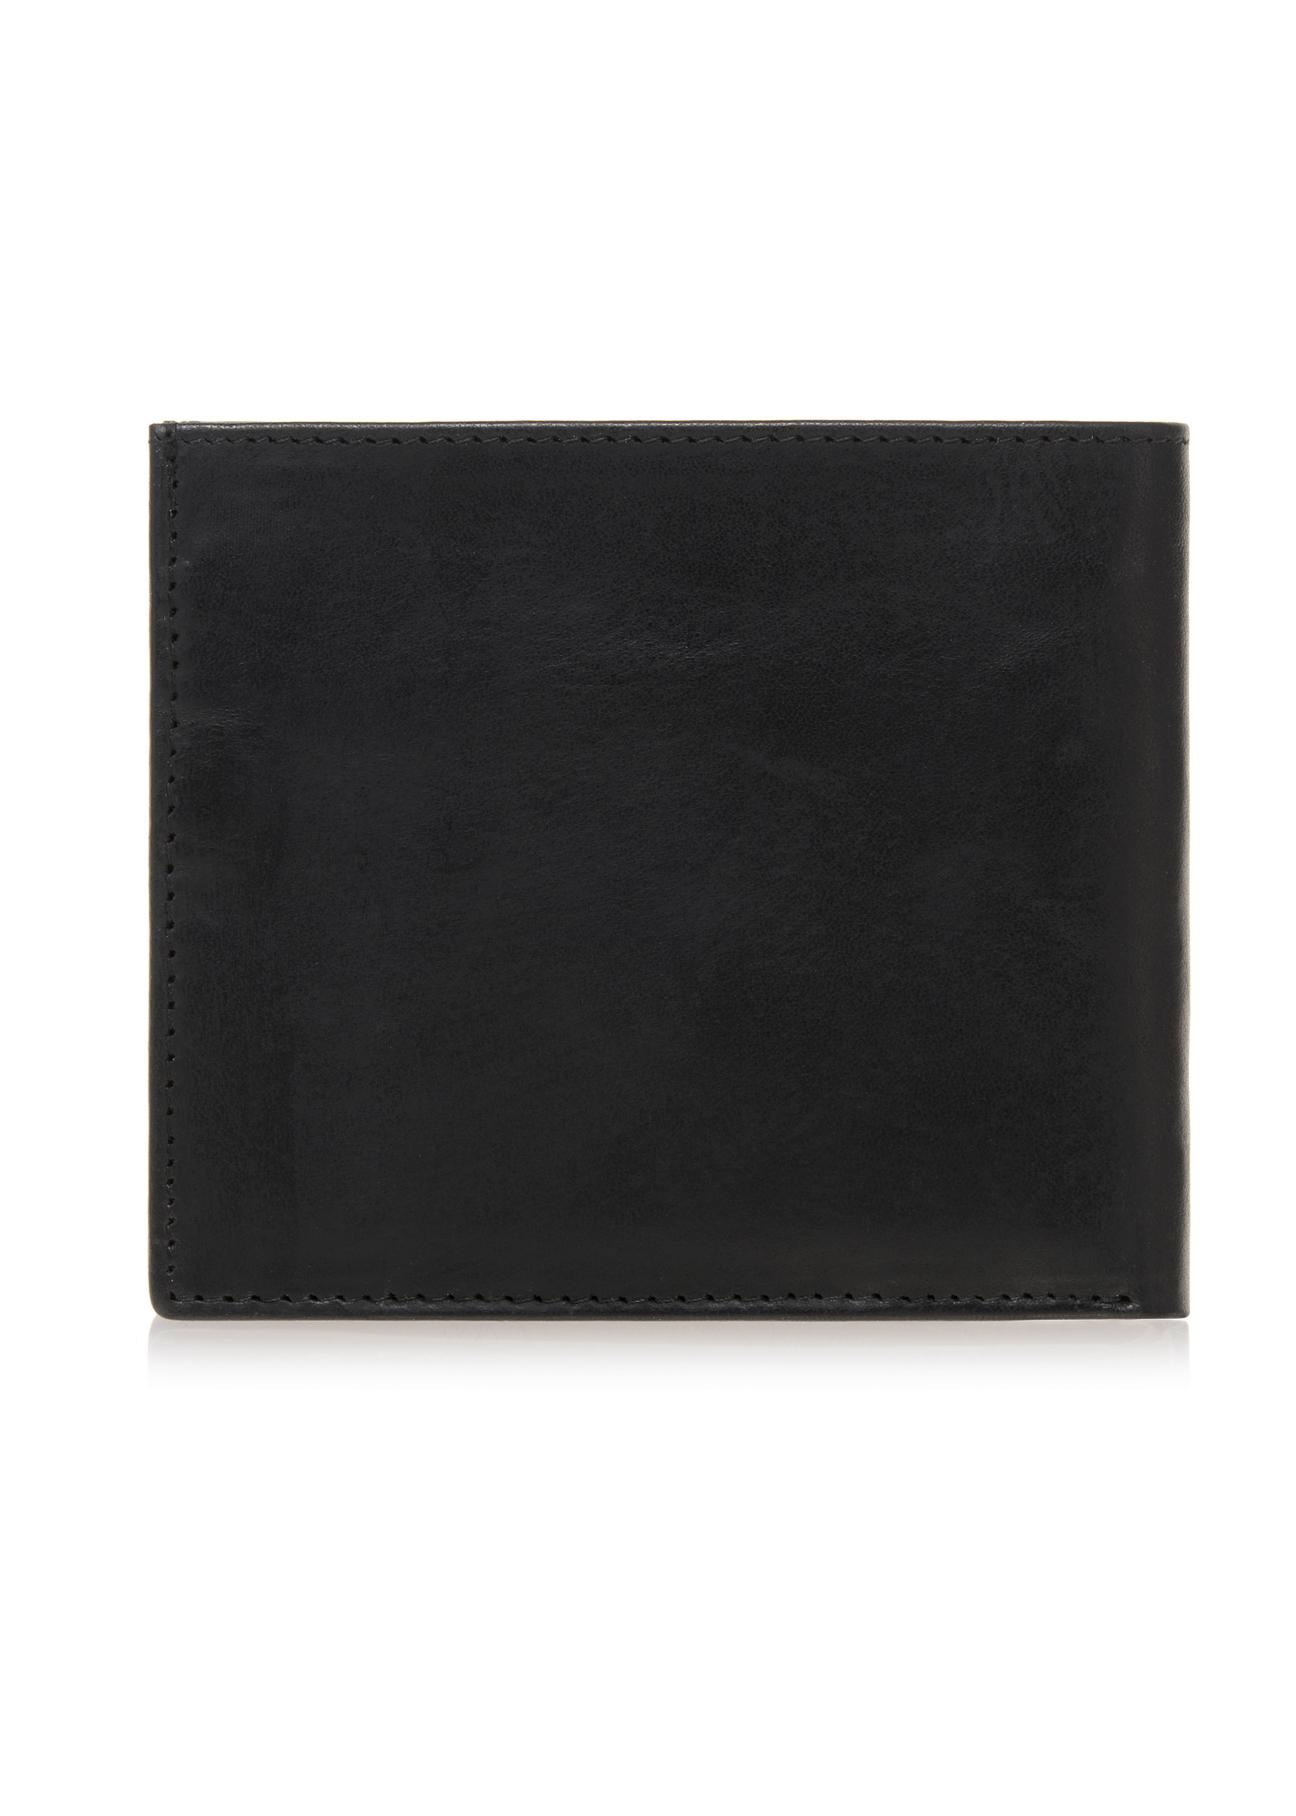 Skórzany czarny portfel męski PORMS-0547-99(W23)